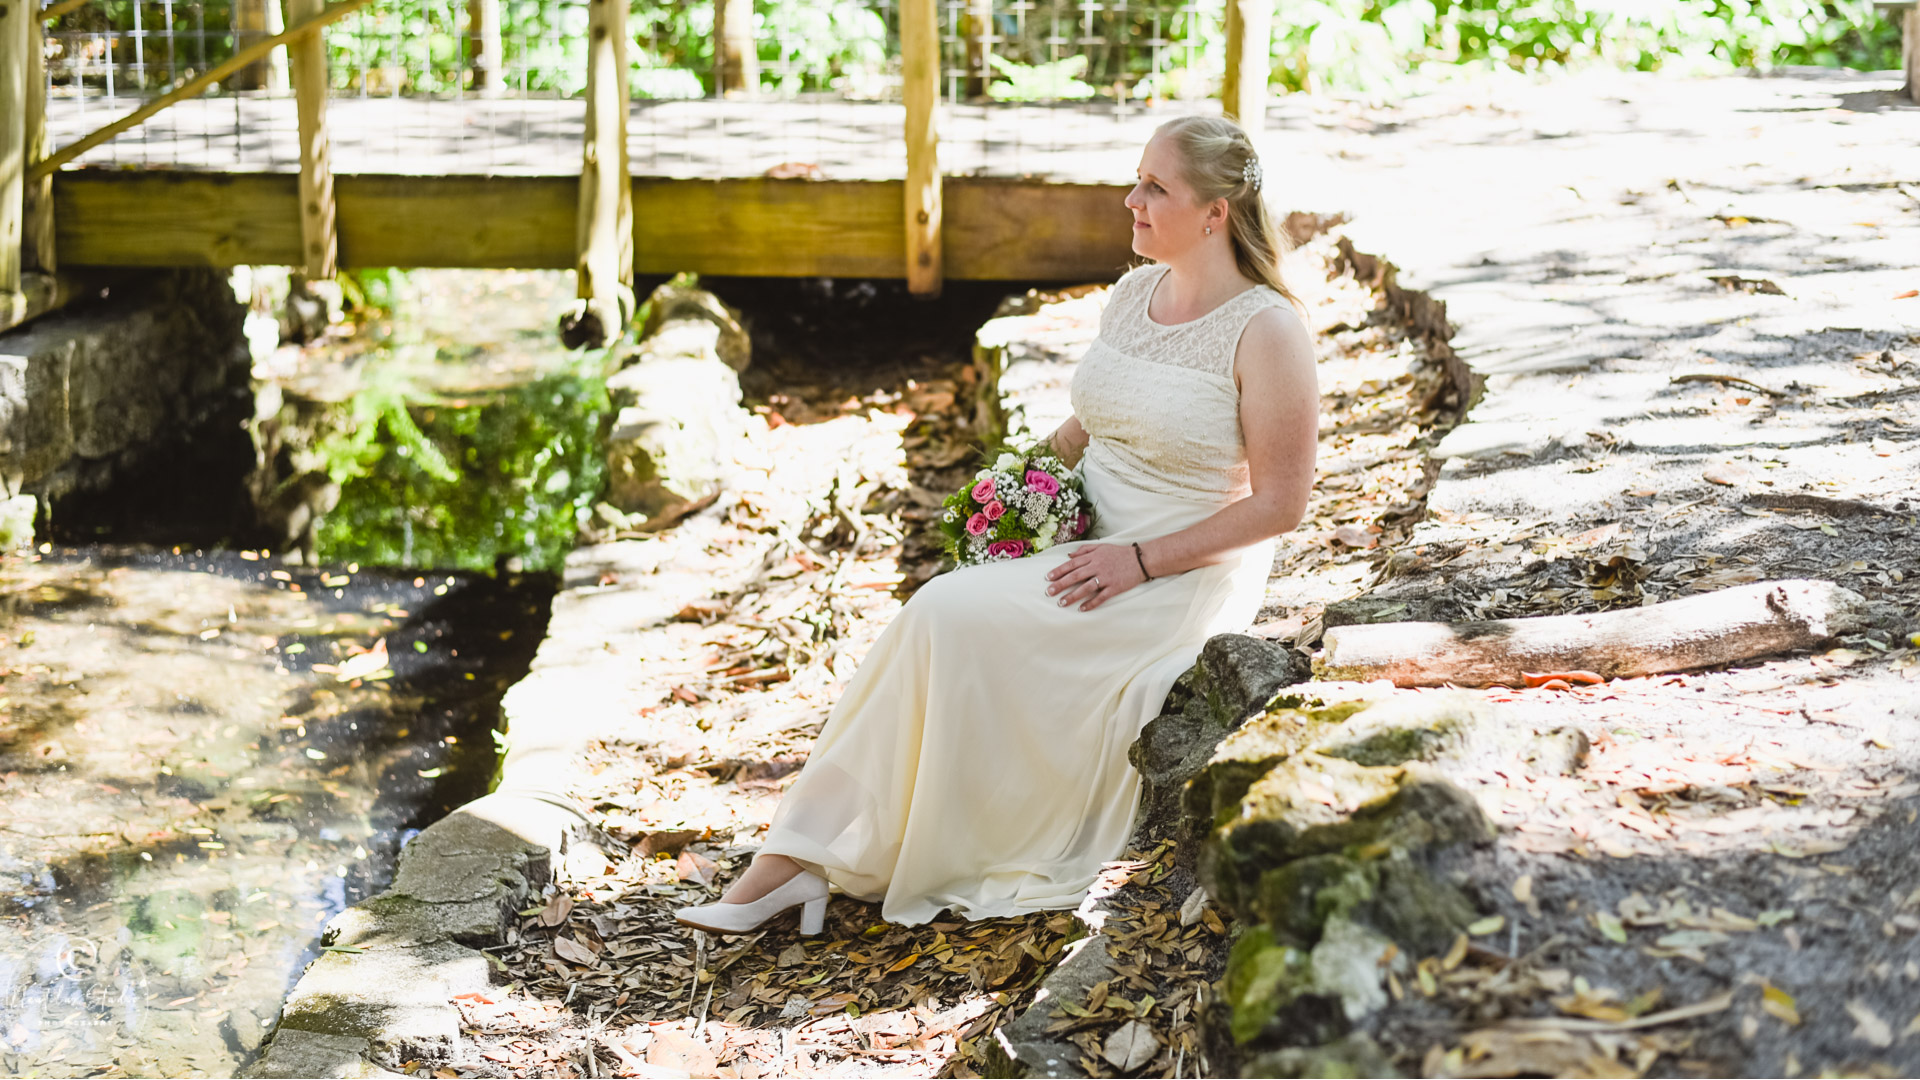 Portrait of bride in garden